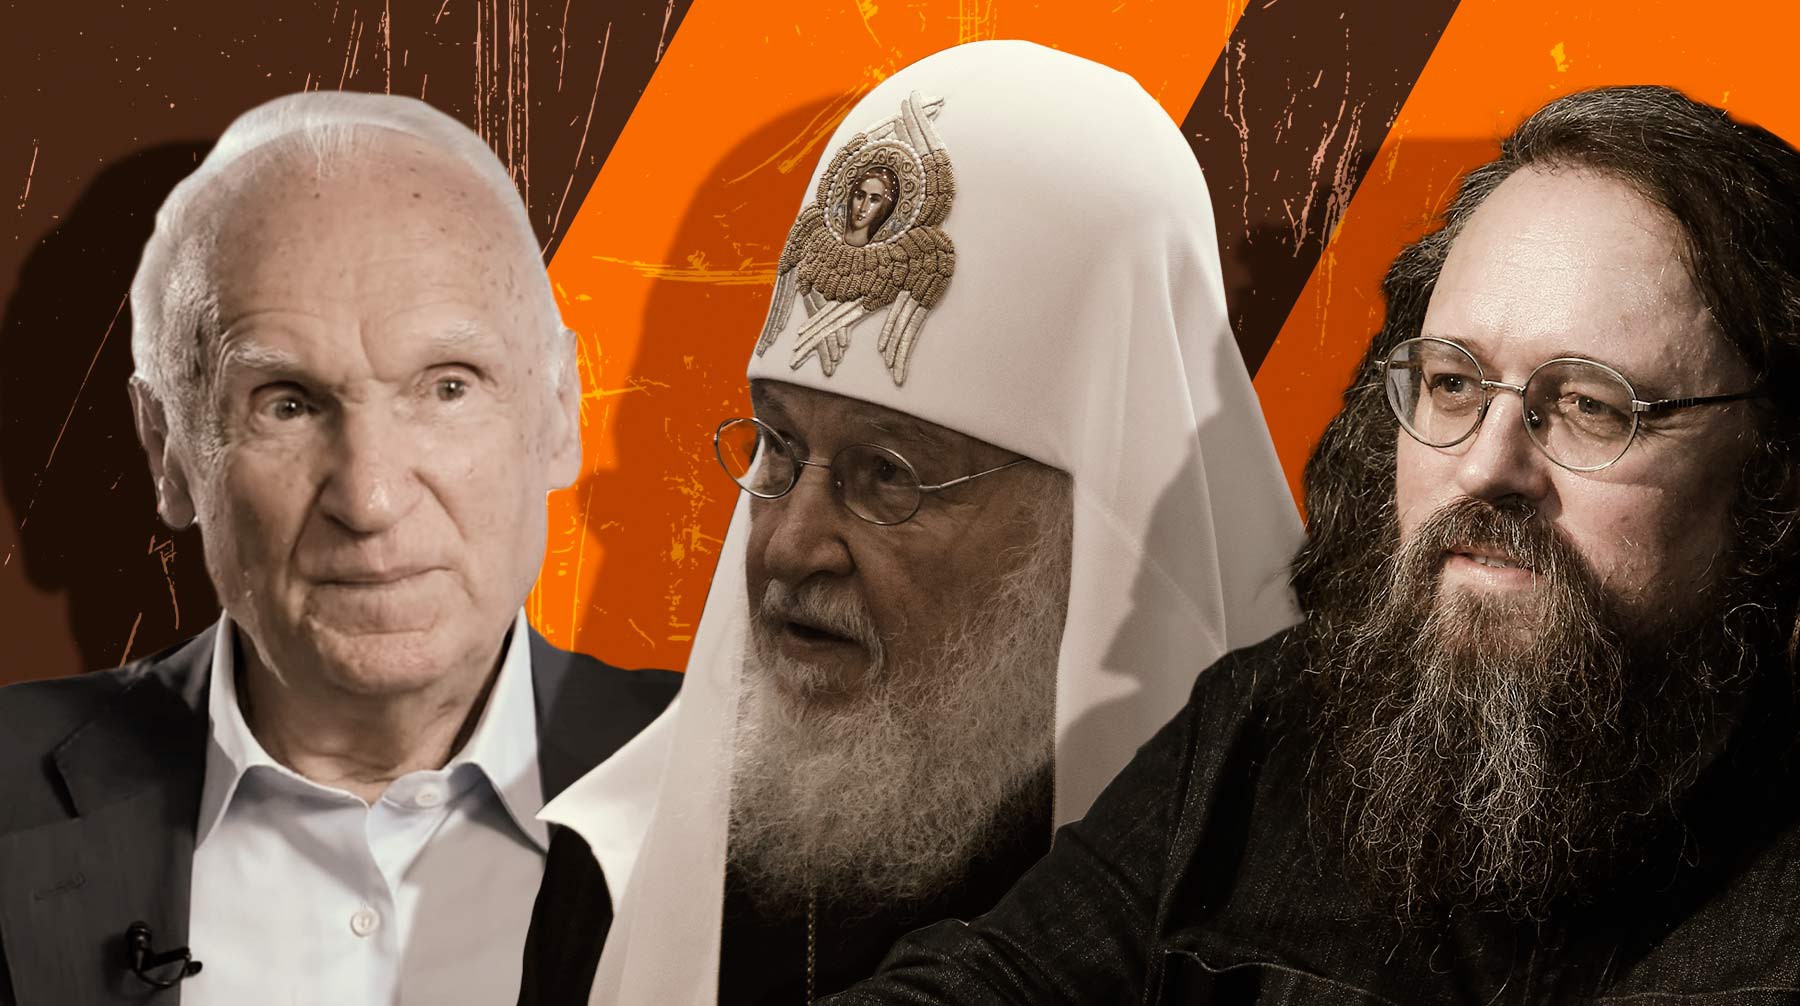 Богословы Кураев и Осипов согласились с патриархом Кириллом о Божьем промысле в появлении у СССР ядерного оружия